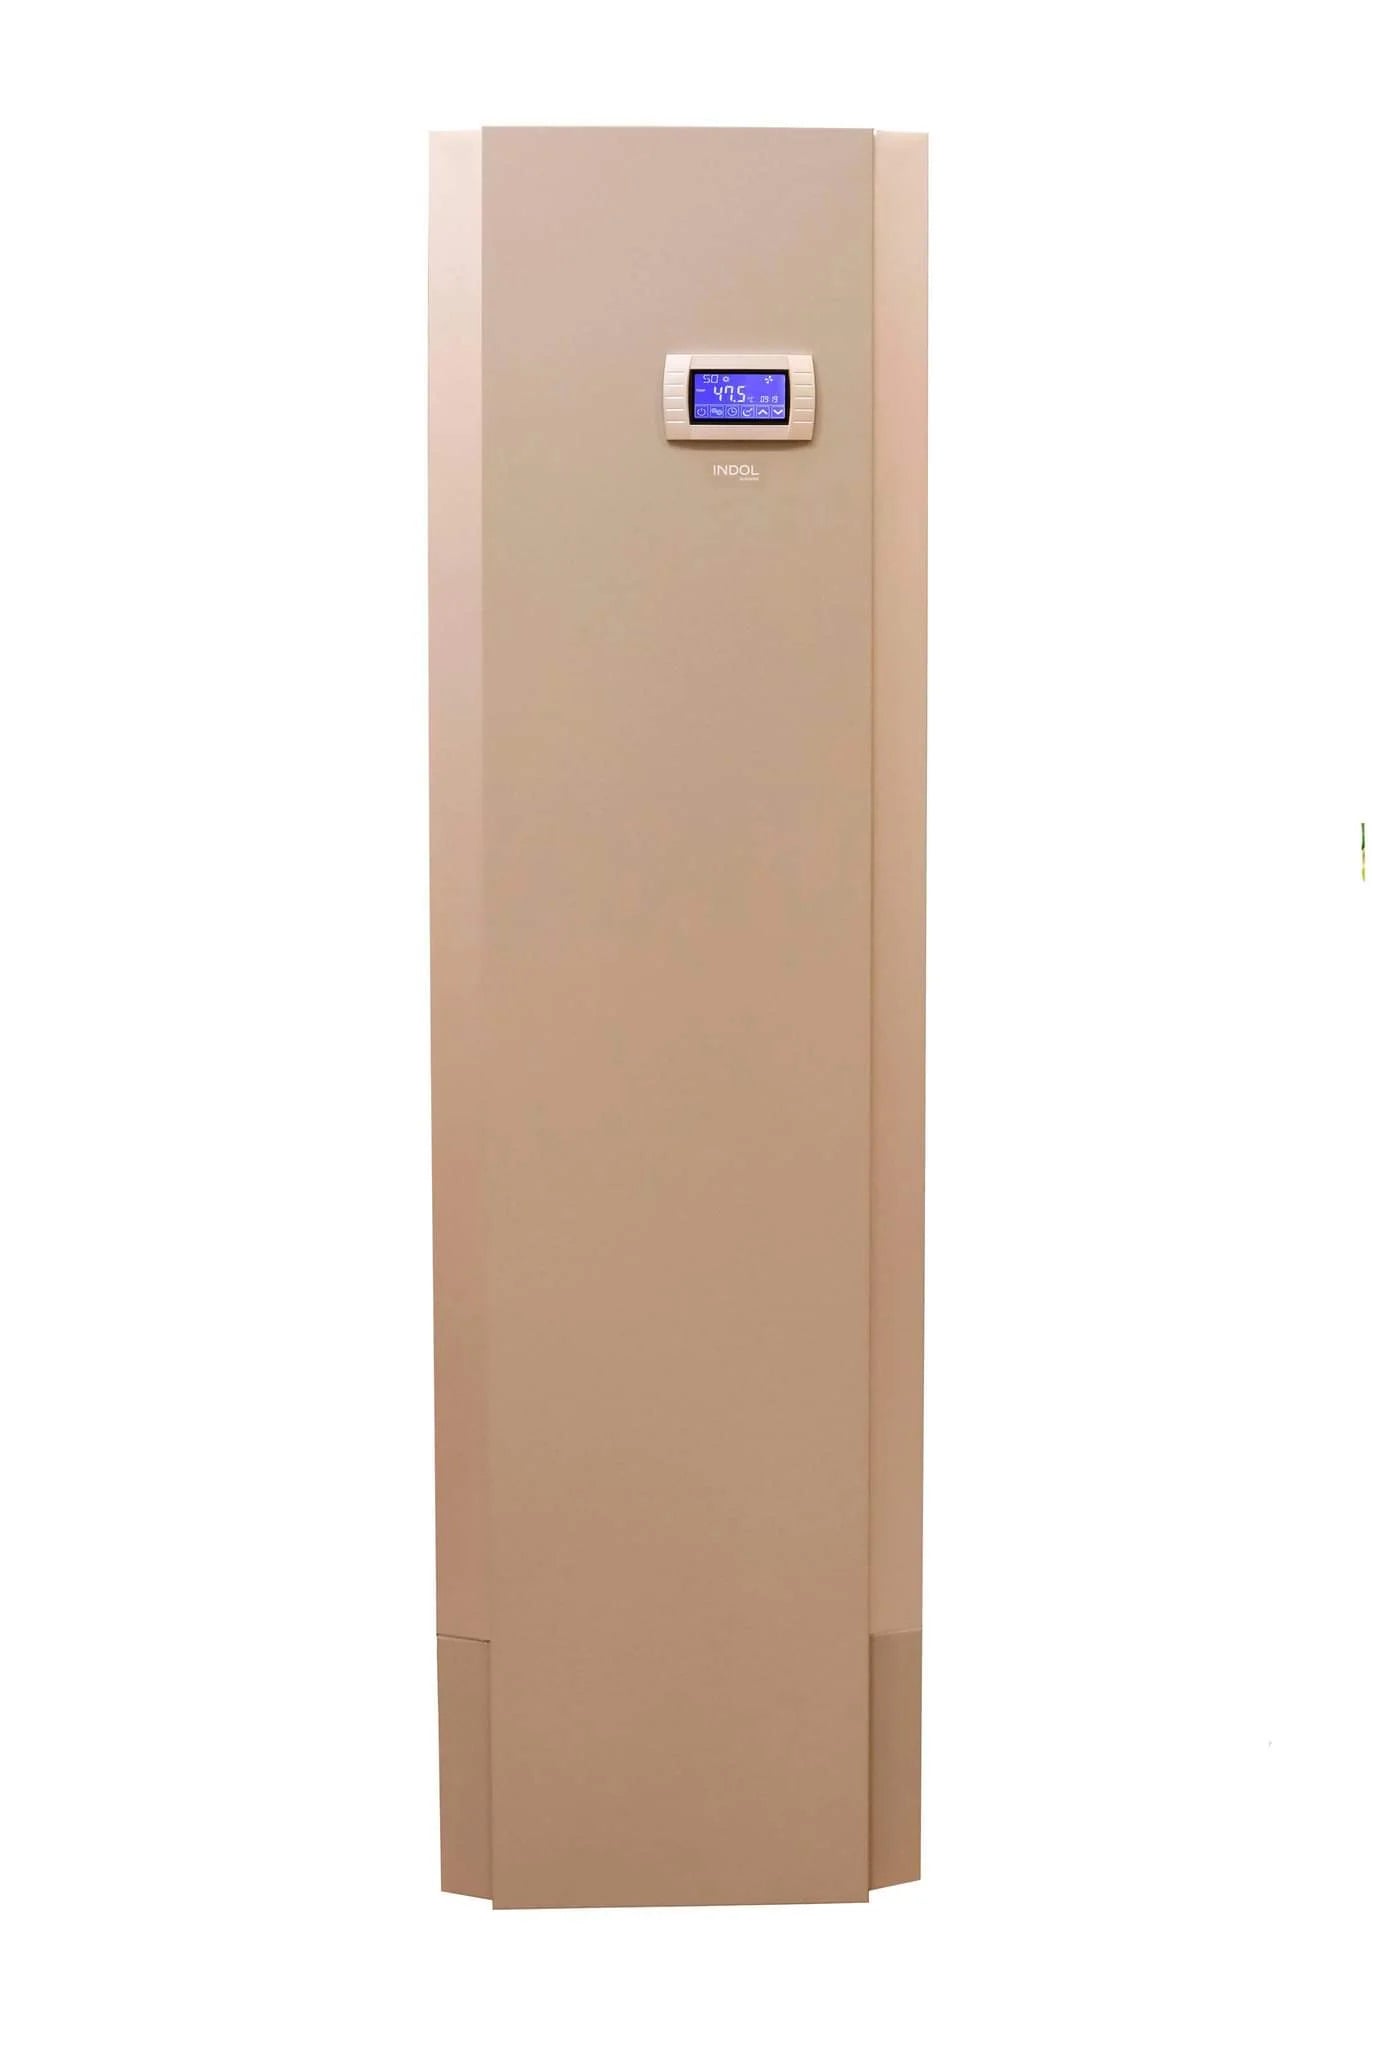 Indol Compact 200A++ varmvattenberedare med värmepump